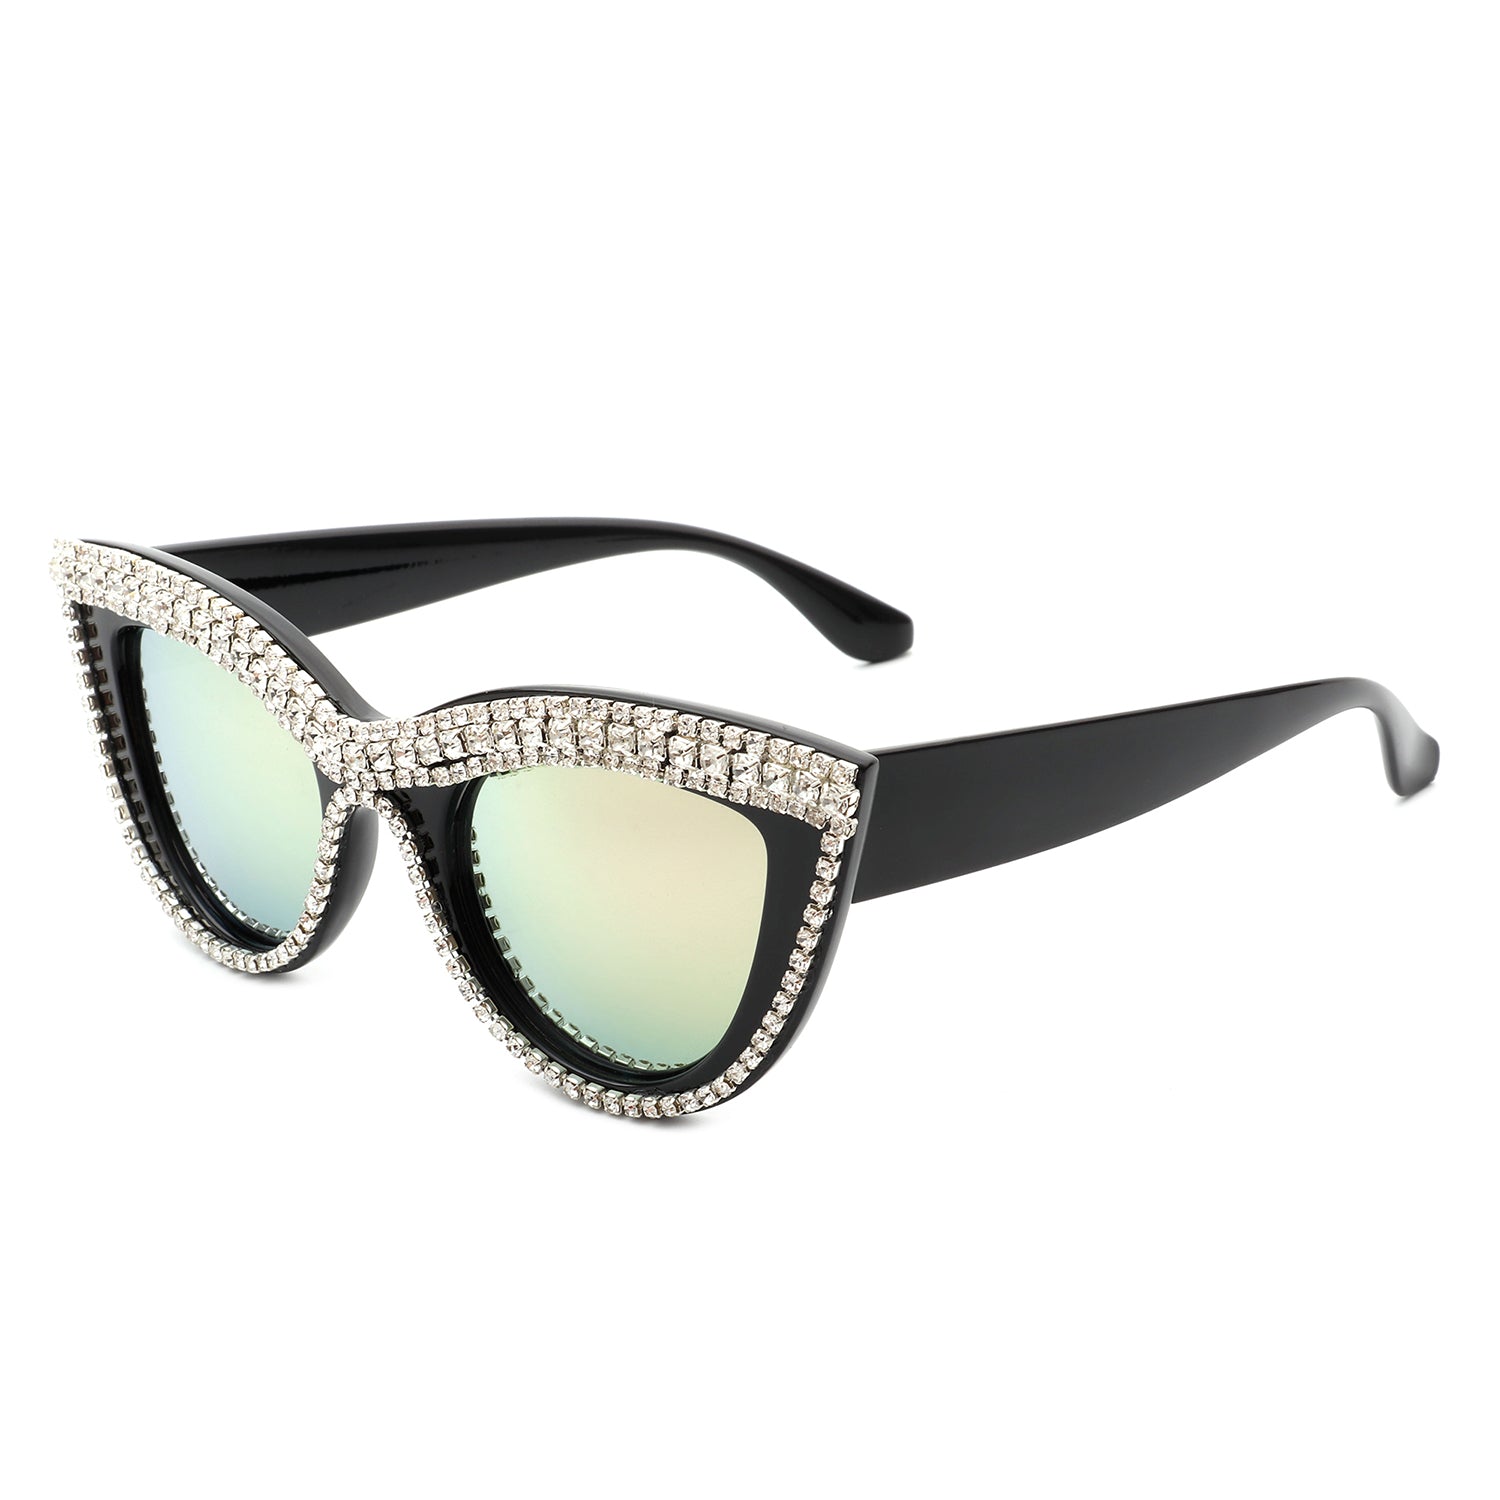 HS2084 - Women Round Fashion Rhinestone Cat Eye Sunglasses - Iris